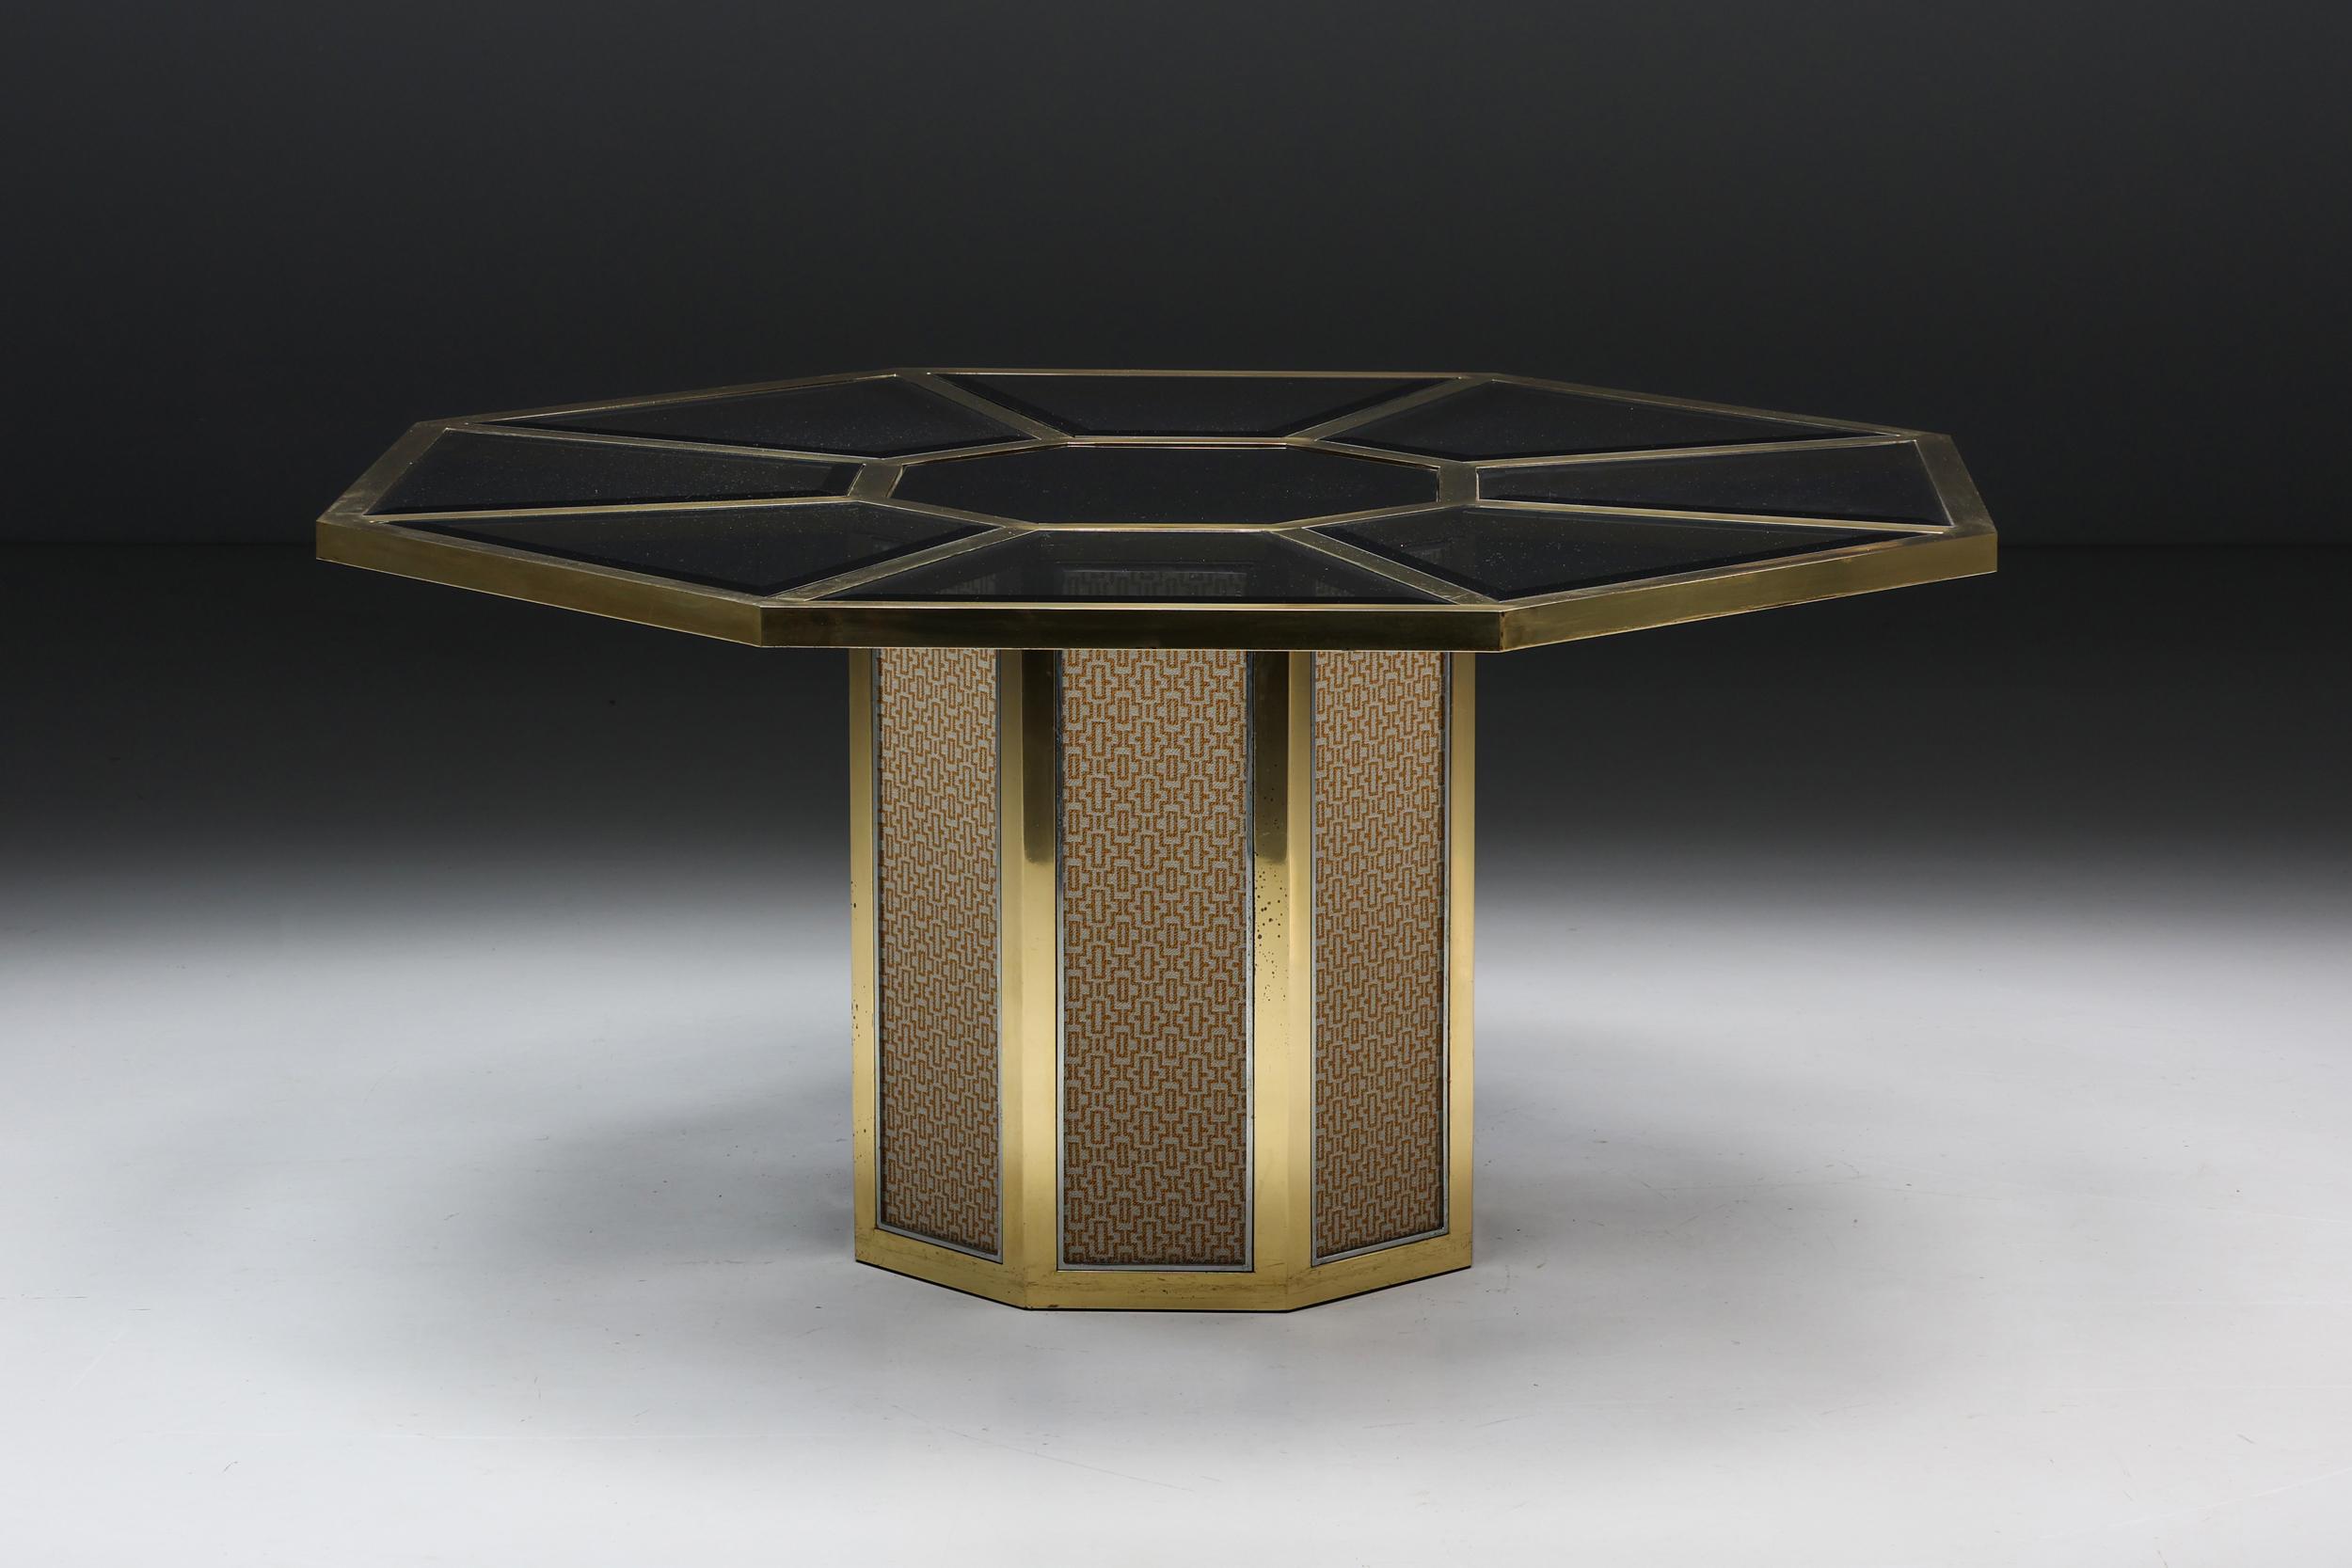 Achteckiger Esstisch von Romeo Rega, ein wahres Schmuckstück aus dem Italien der 1970er Jahre. Dieser mit Präzision aus poliertem Messing im Vintage-Stil und verchromten Akzenten gefertigte Tisch zeigt nicht nur das ikonische achteckige Design der